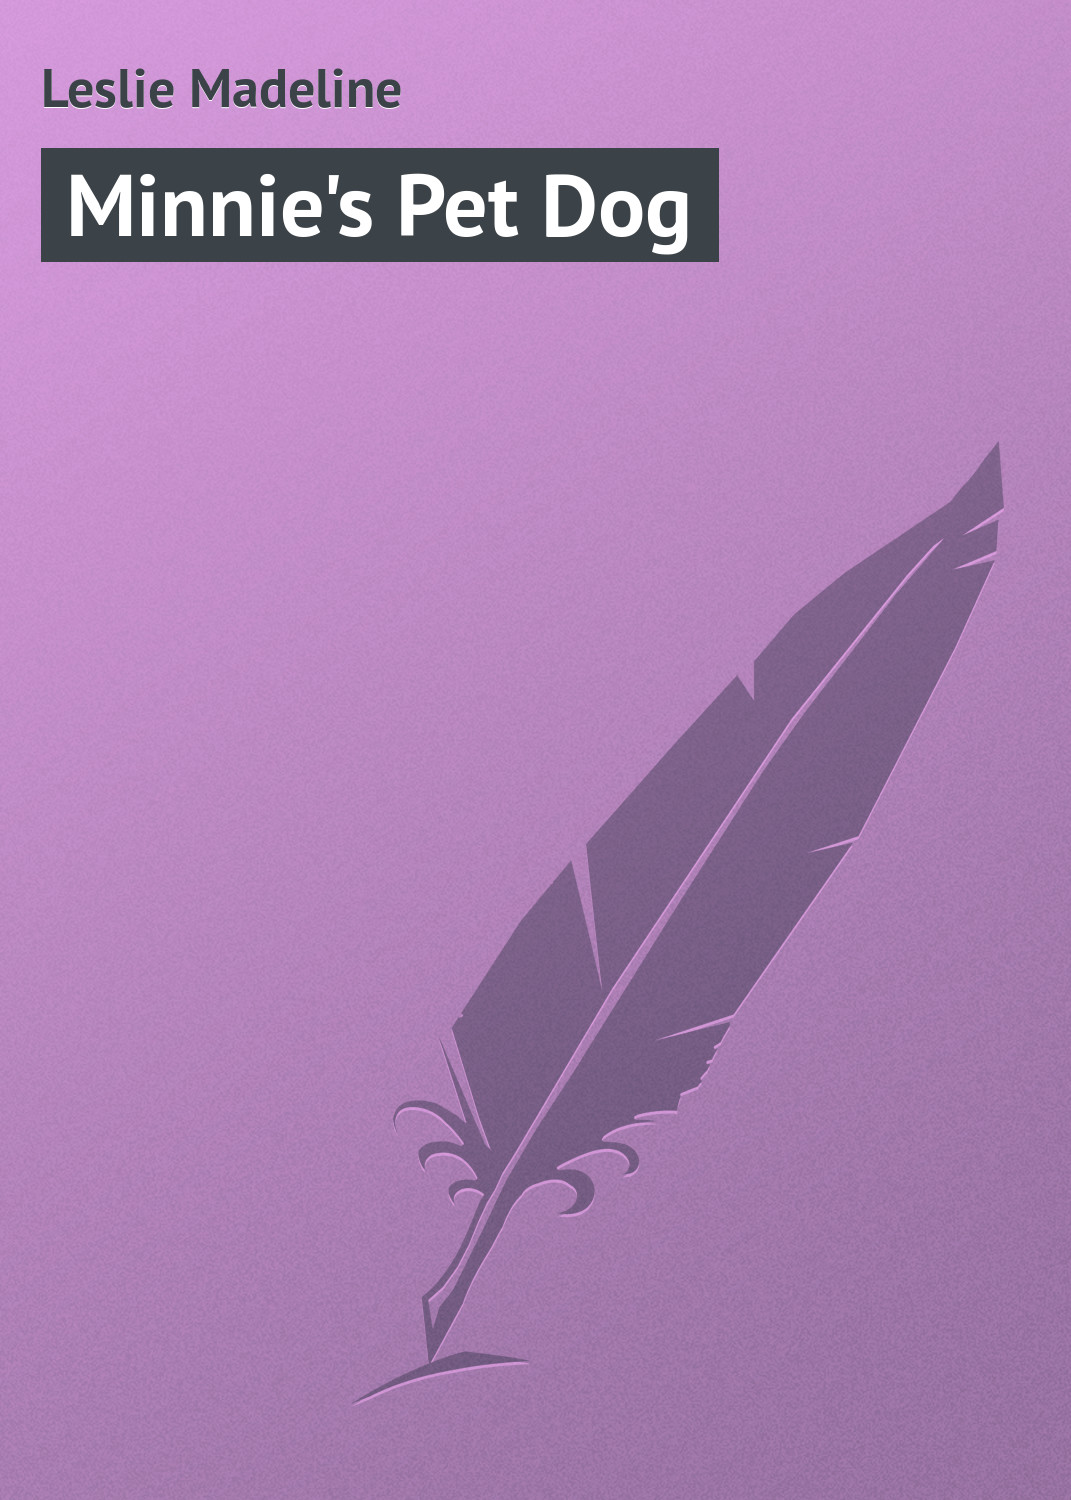 Книга Minnie's Pet Dog из серии , созданная Madeline Leslie, может относится к жанру Зарубежная классика, Зарубежные детские книги, Иностранные языки. Стоимость электронной книги Minnie's Pet Dog с идентификатором 23155339 составляет 5.99 руб.